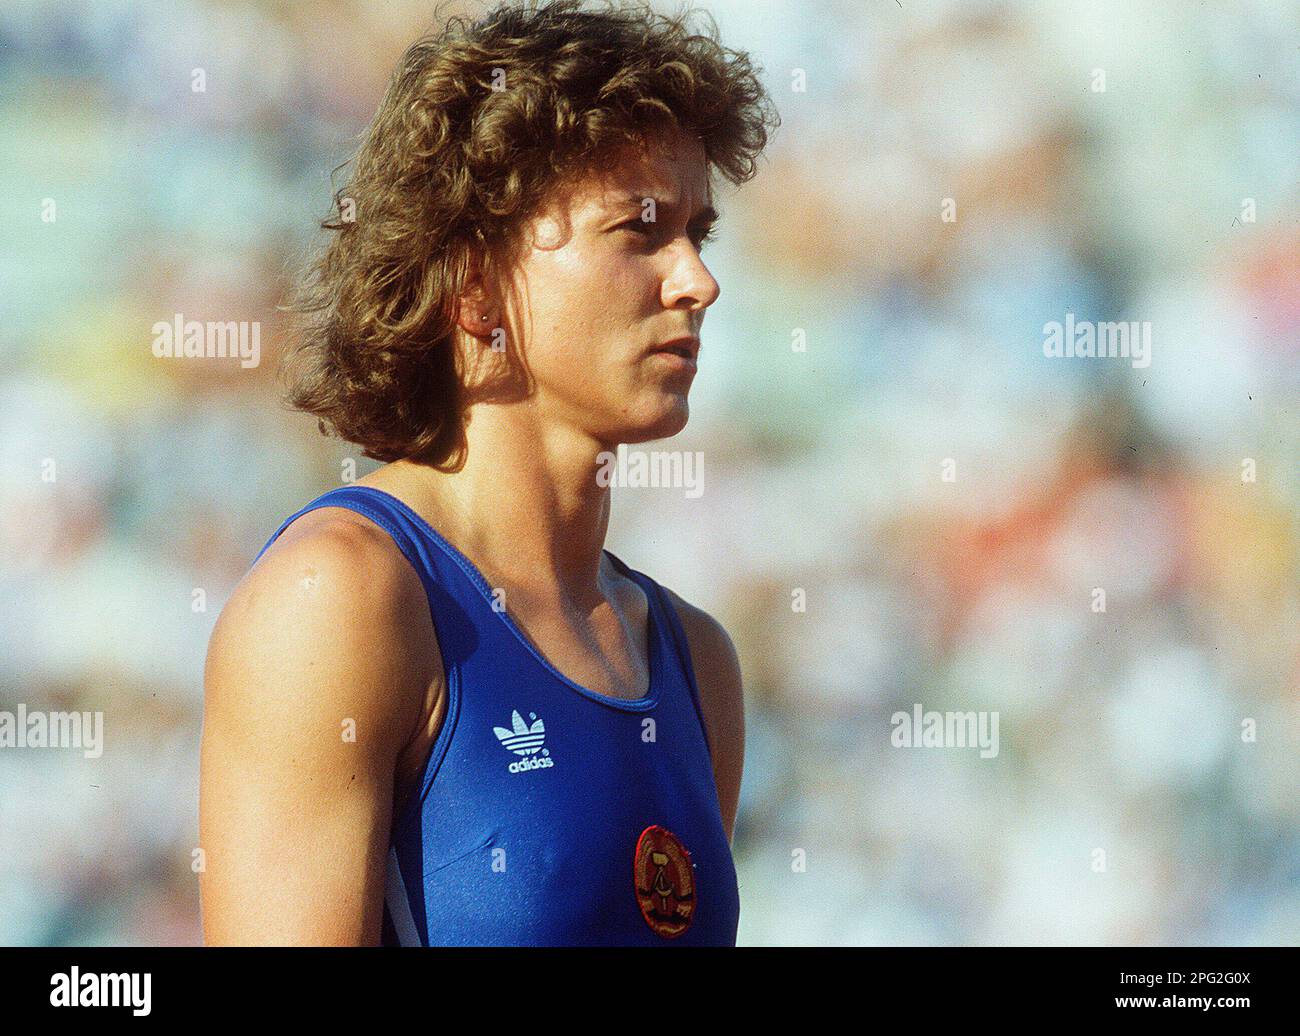 ARCHIVE PHOTO: Marlies GOEHR 65 ans sur 21 mars 2023, Marlies GOEHR, OELSNER, GOHR, GDR, athlète, avant le début de la course féminine de 100 m, course de relais d'action, 4 x 100 m de femmes, aux Championnats du monde d'athlétisme à Rome de 29 août à 6 septembre 1987, ?SVEN SIMON, Princess-Luise-Str.41 Simon#45479 Muelheim/Ruhr#tel.no.no.fax 0208/9413250#account 1428150 C ommerzbank # 36040039:9413260 #e-BLZ#SvenSimon@t-online.de. Banque D'Images